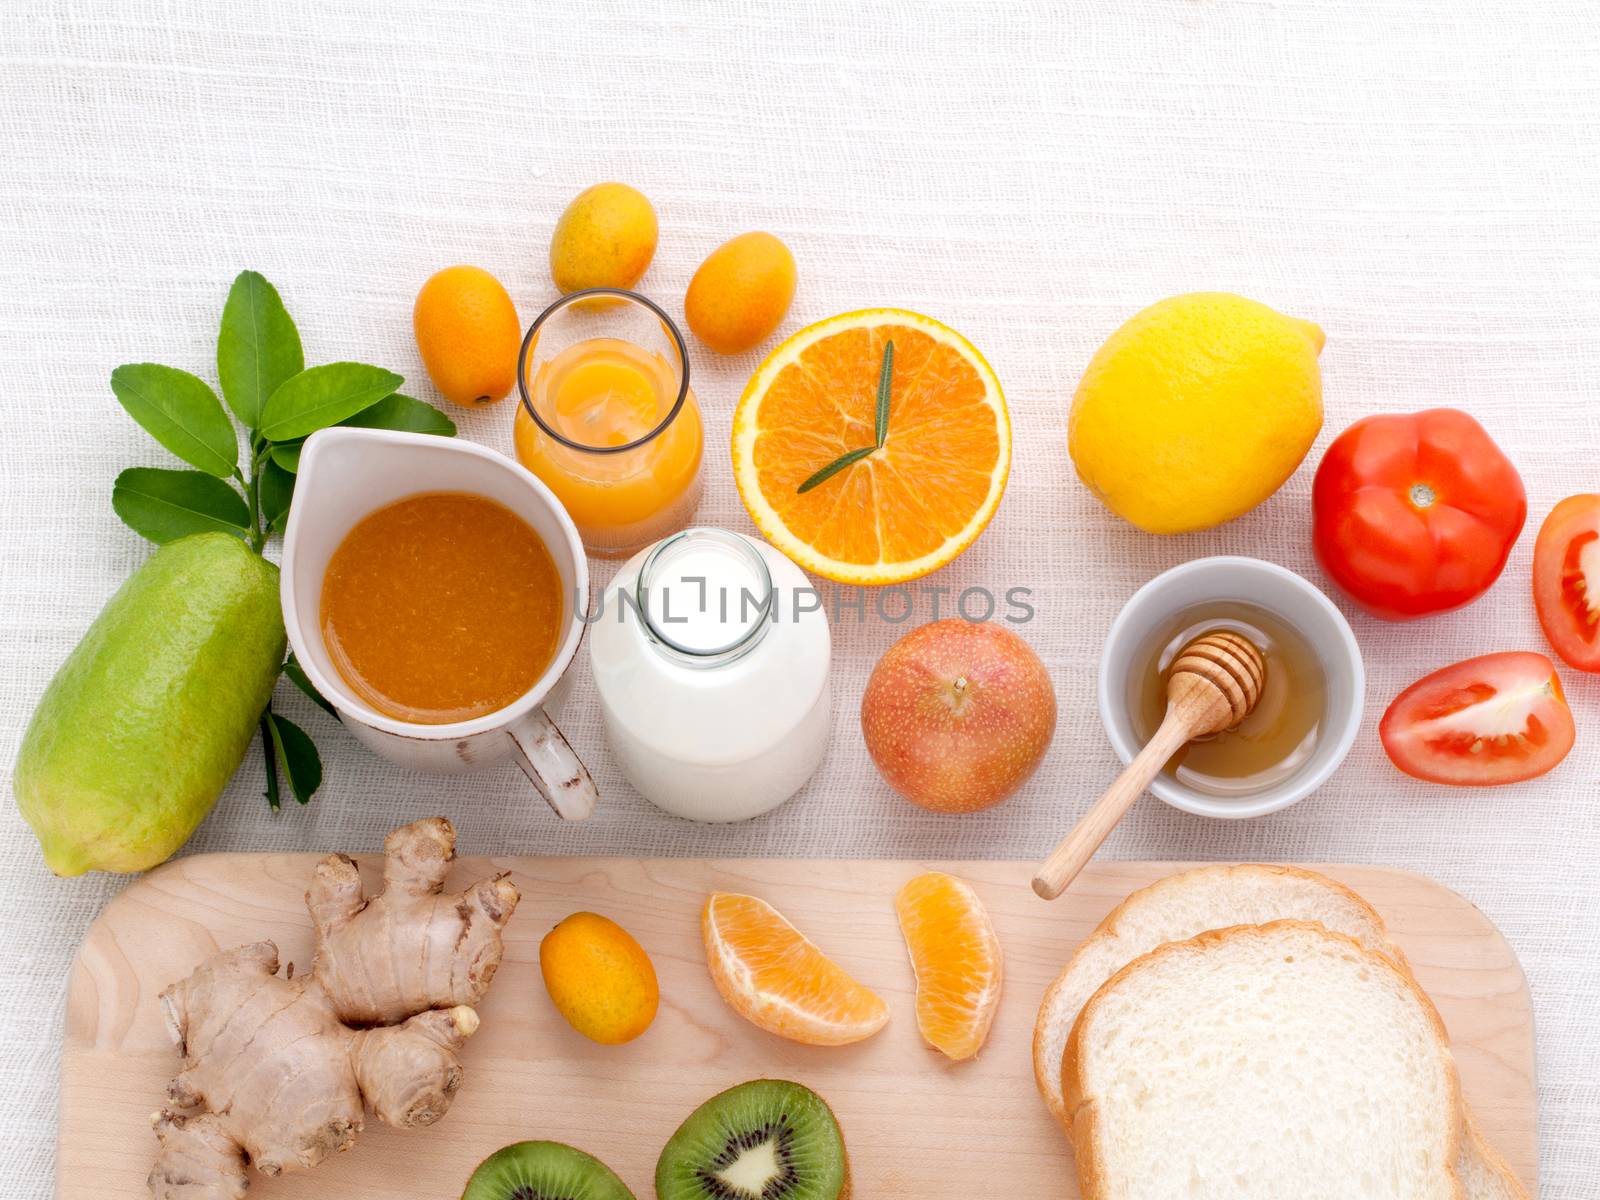 Breakfast with orange juice, oranges, oranges slice, passion fru by kerdkanno